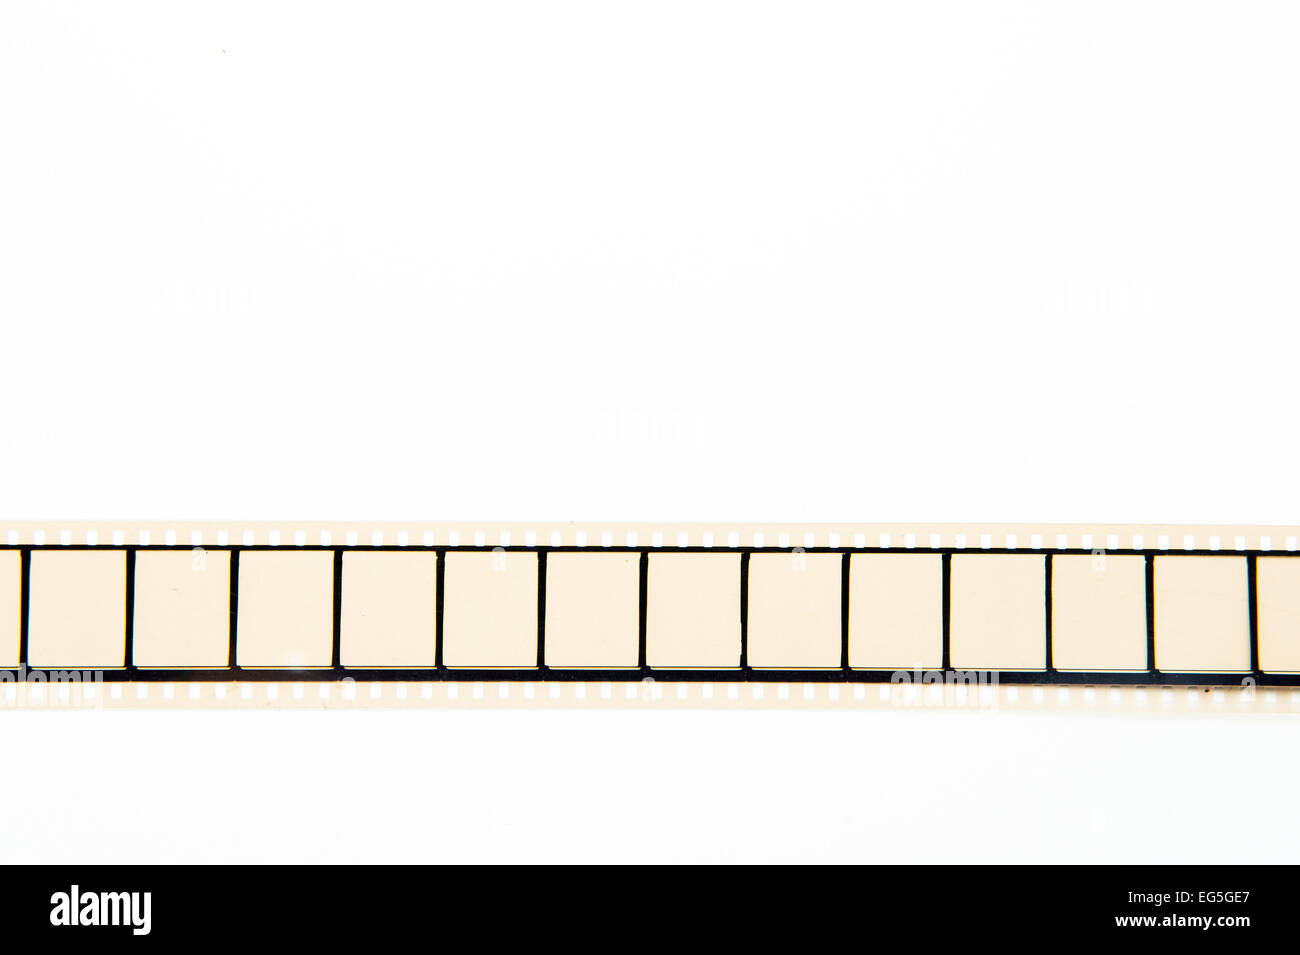 Dettaglio di srotolato 35mm movie aspo con cornici vuote in posizione orizzontale, vintage Effetto colore su sfondo bianco Foto Stock